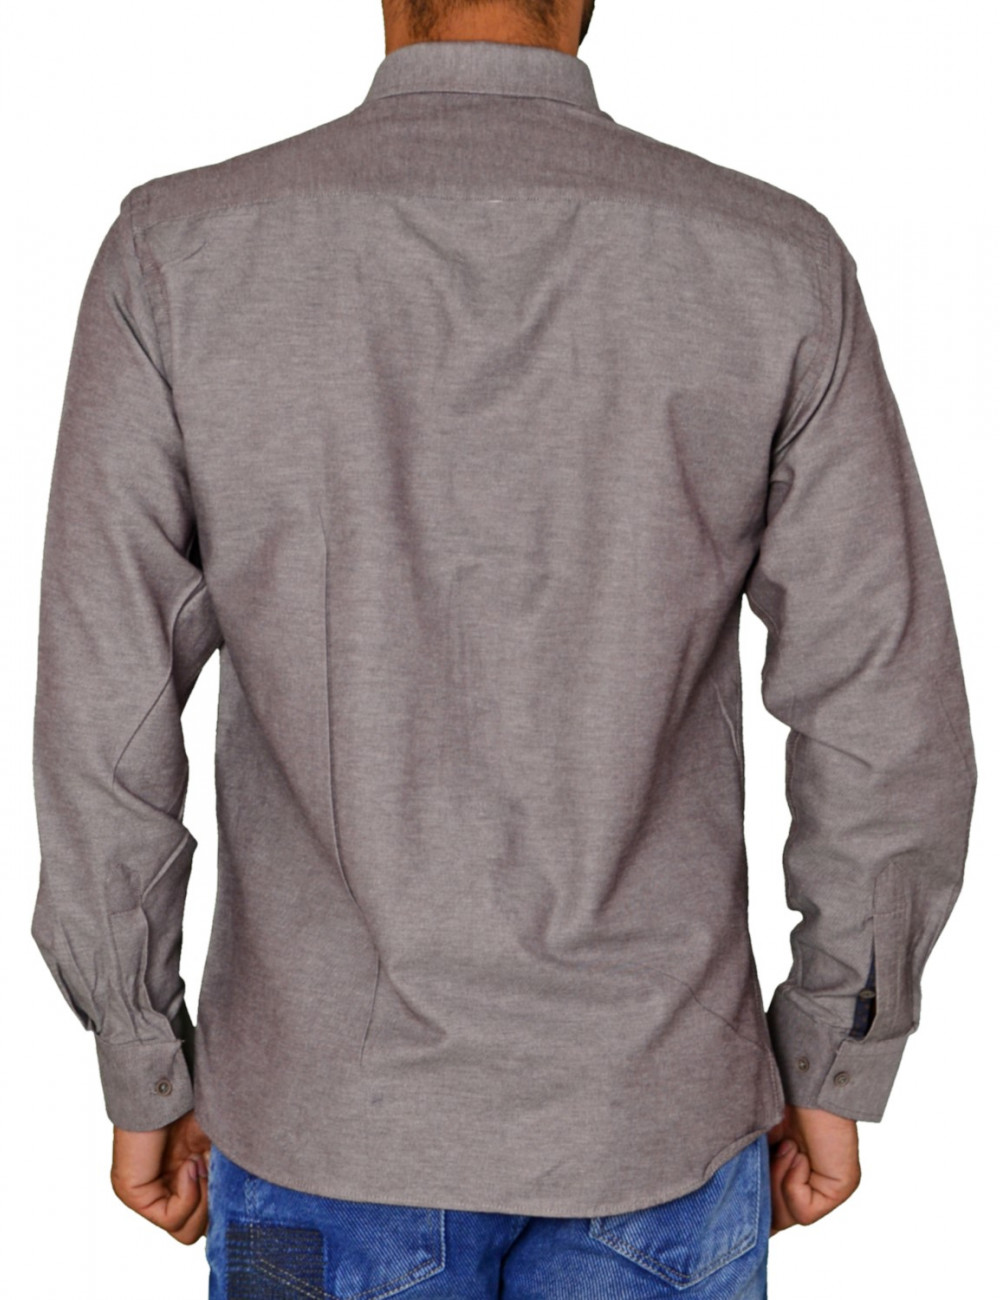 Ανδρικό πουκάμισο υφασμάτινο μονόχρωμο καφέ Ben Tailor 21916F